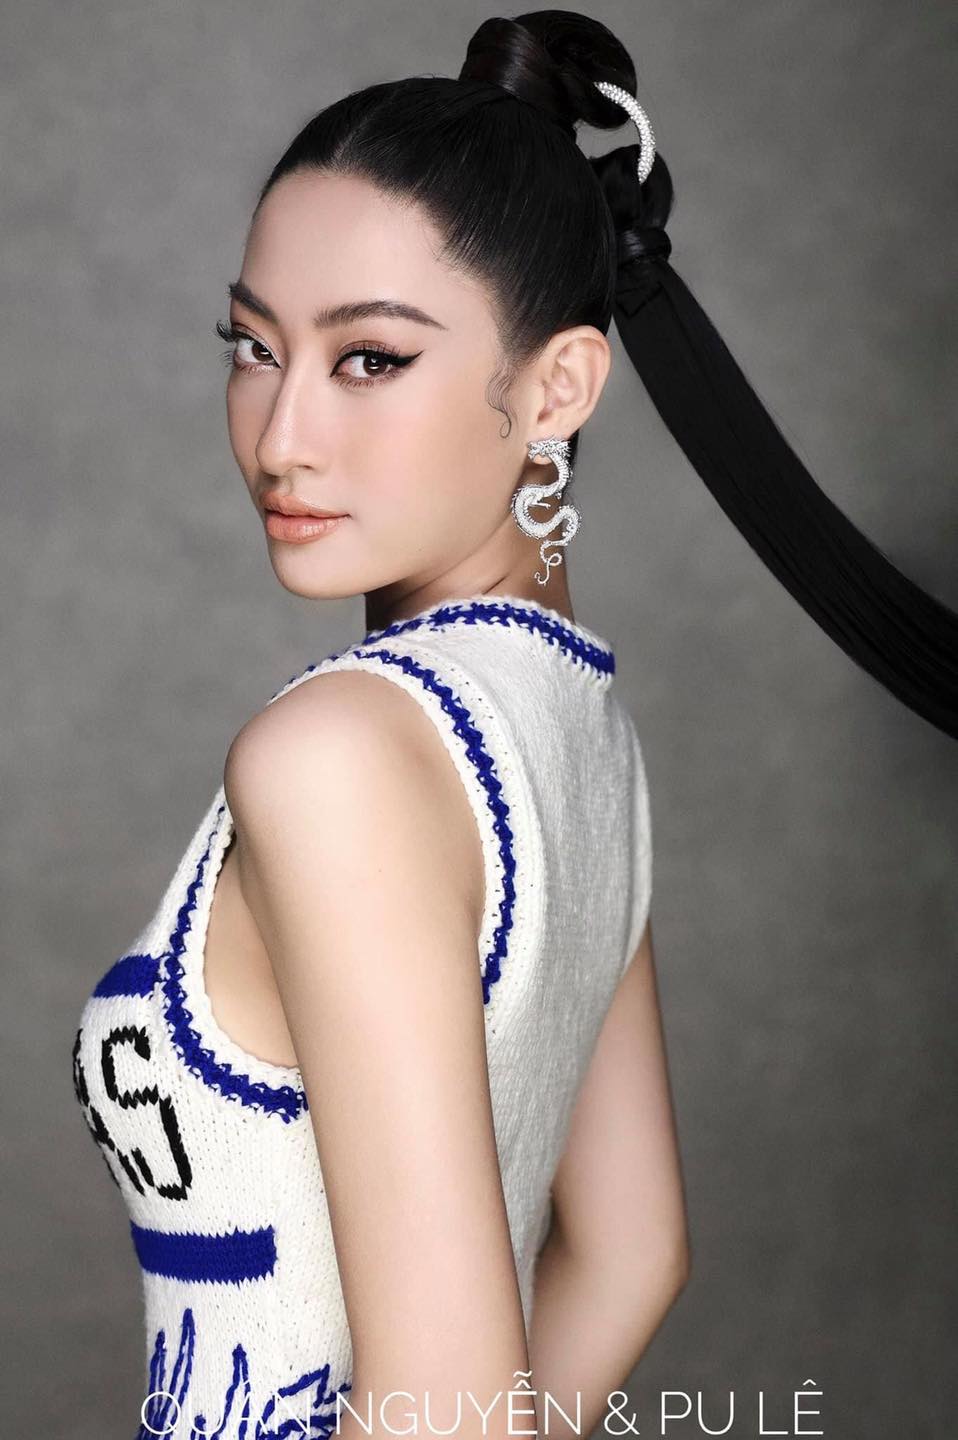 Phát ngôn về first face và vedette của Miss World Vietnam 2019 đã làm dấy lên tranh cãi trên mạng xã hội